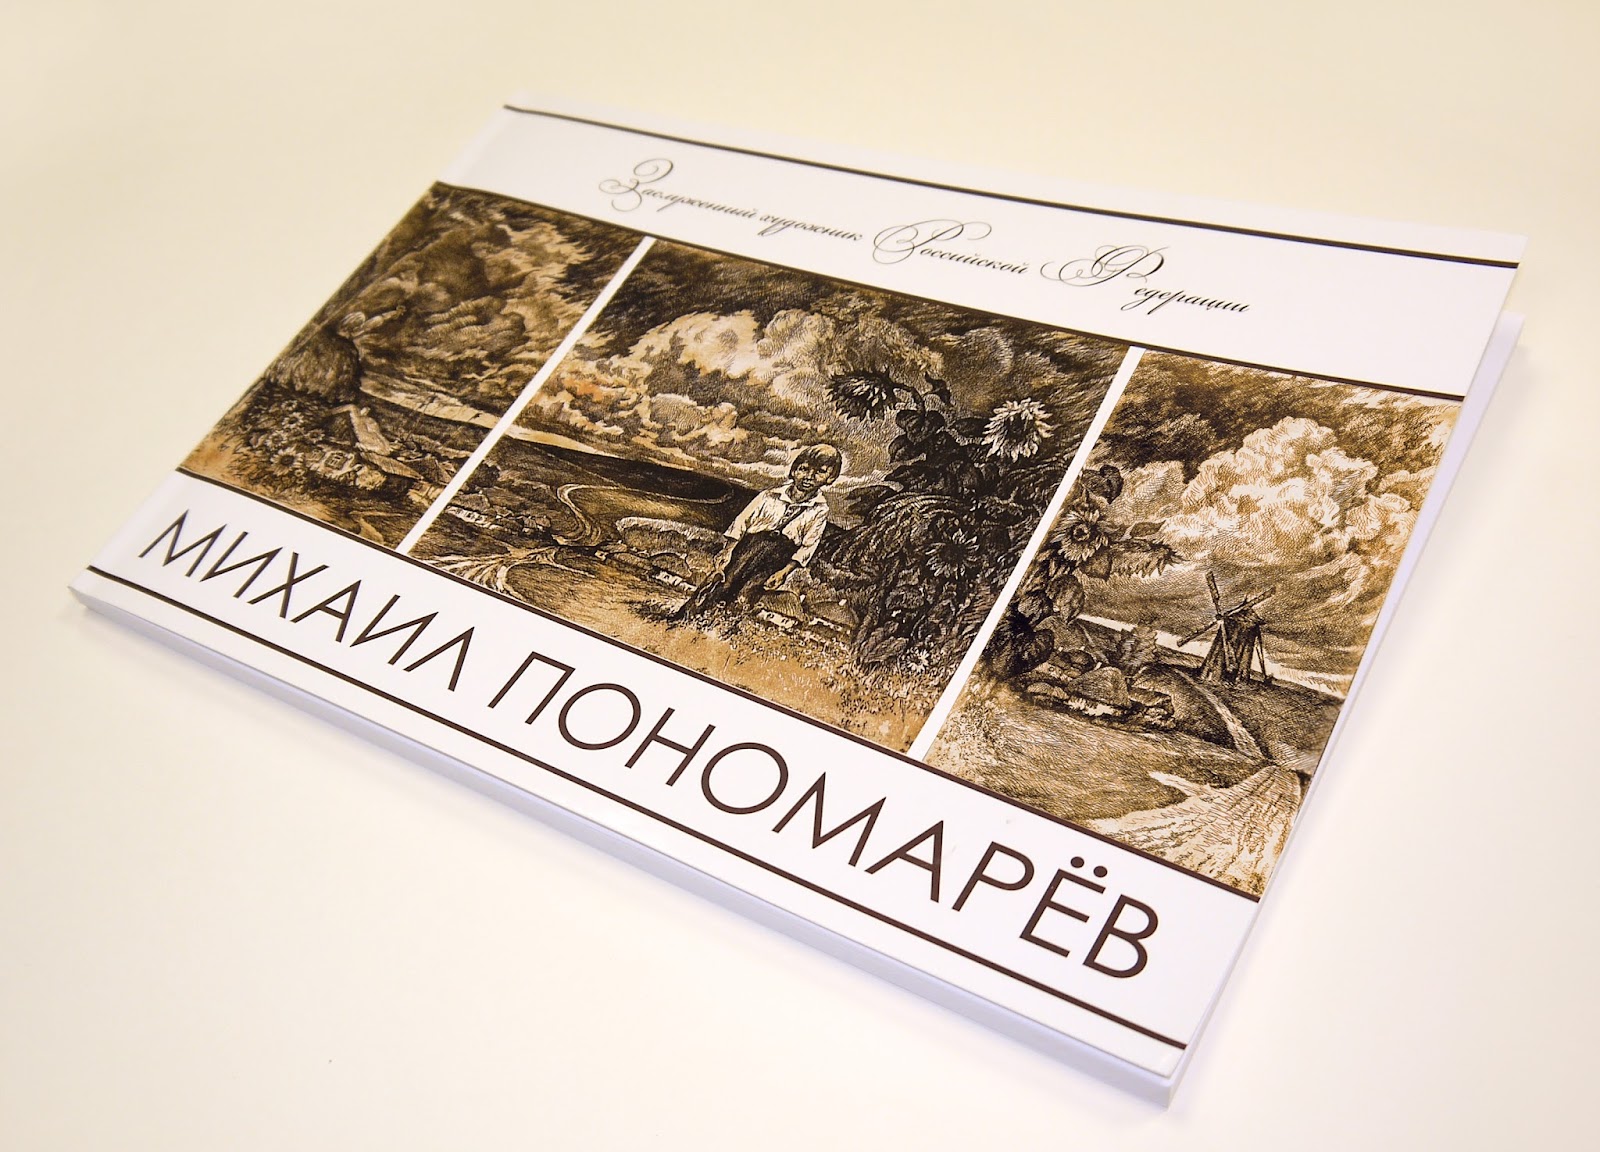 Выставка художника Михаила Пономарева - лучший помин его мудрой души